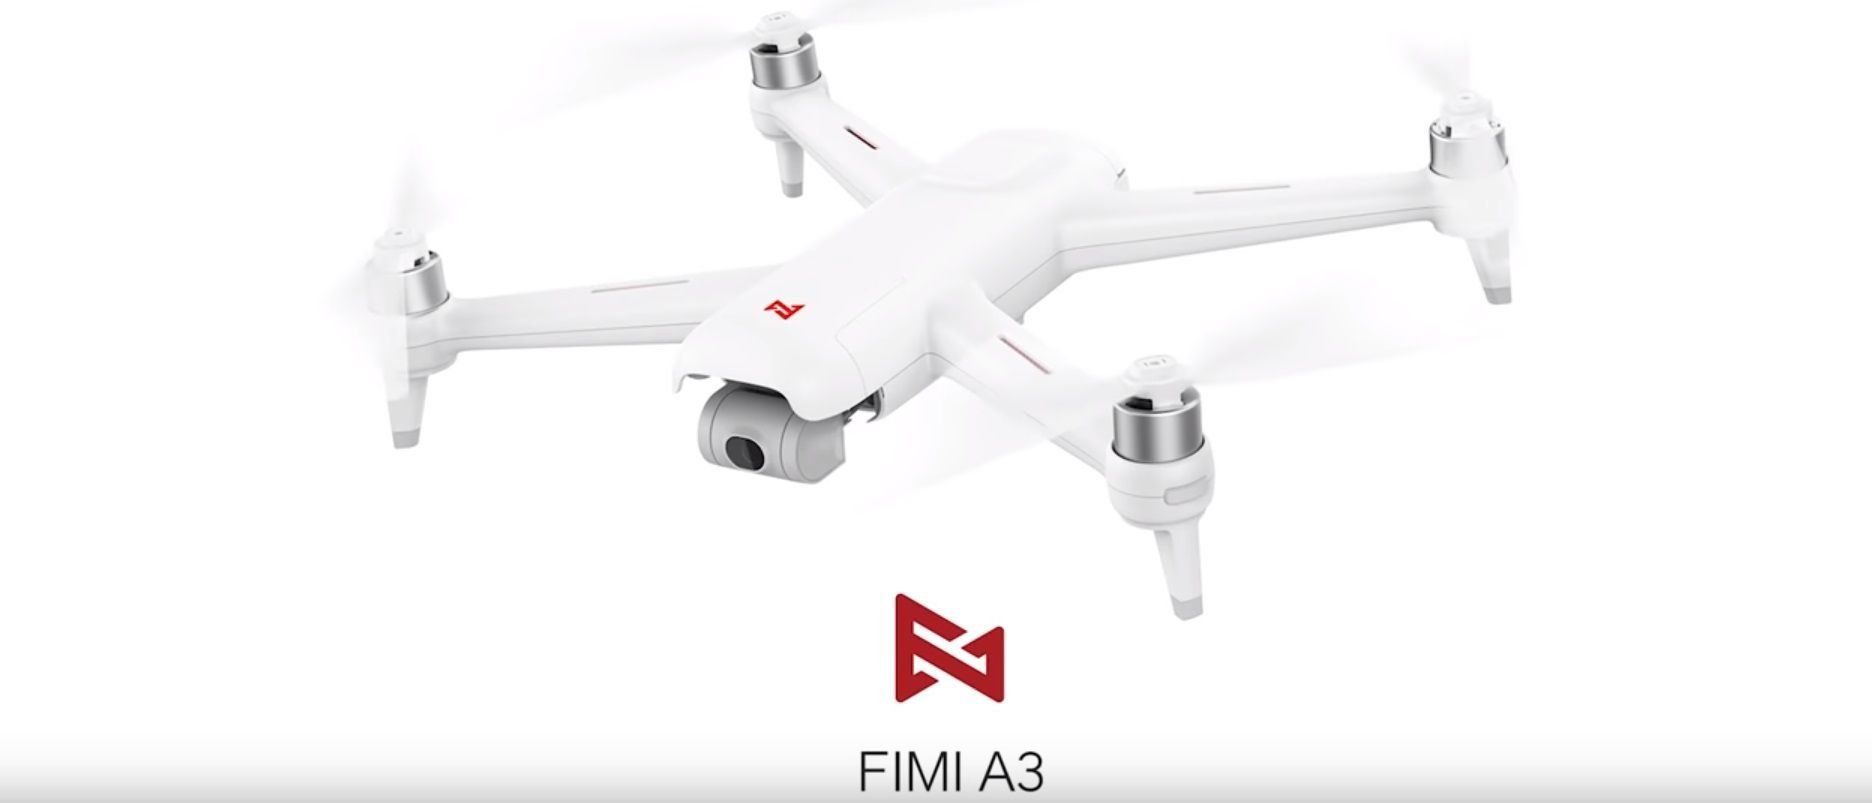 Kajian semula quadcopter Xiaomi FIMI A3 dengan kelebihan dan kekurangan